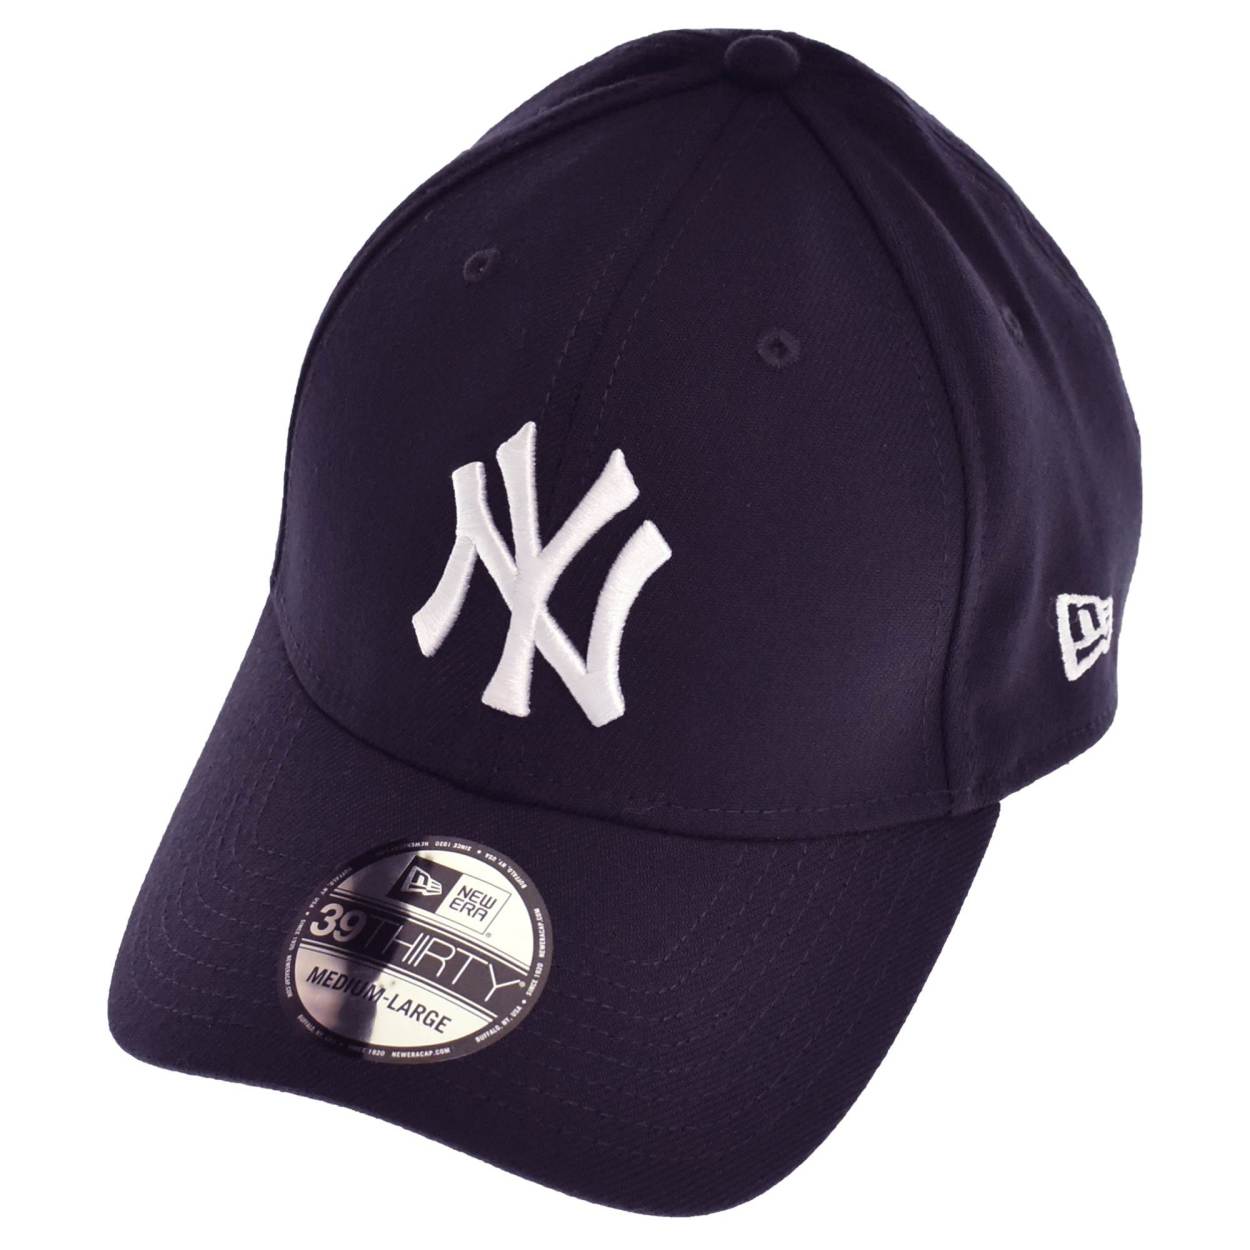 ニューエラ キャップ 帽子 メンズ レディース ニューエラ NEW ERA ブラック 黒 ホワイト 白 グレー ネイビー BBキャップ 野球帽